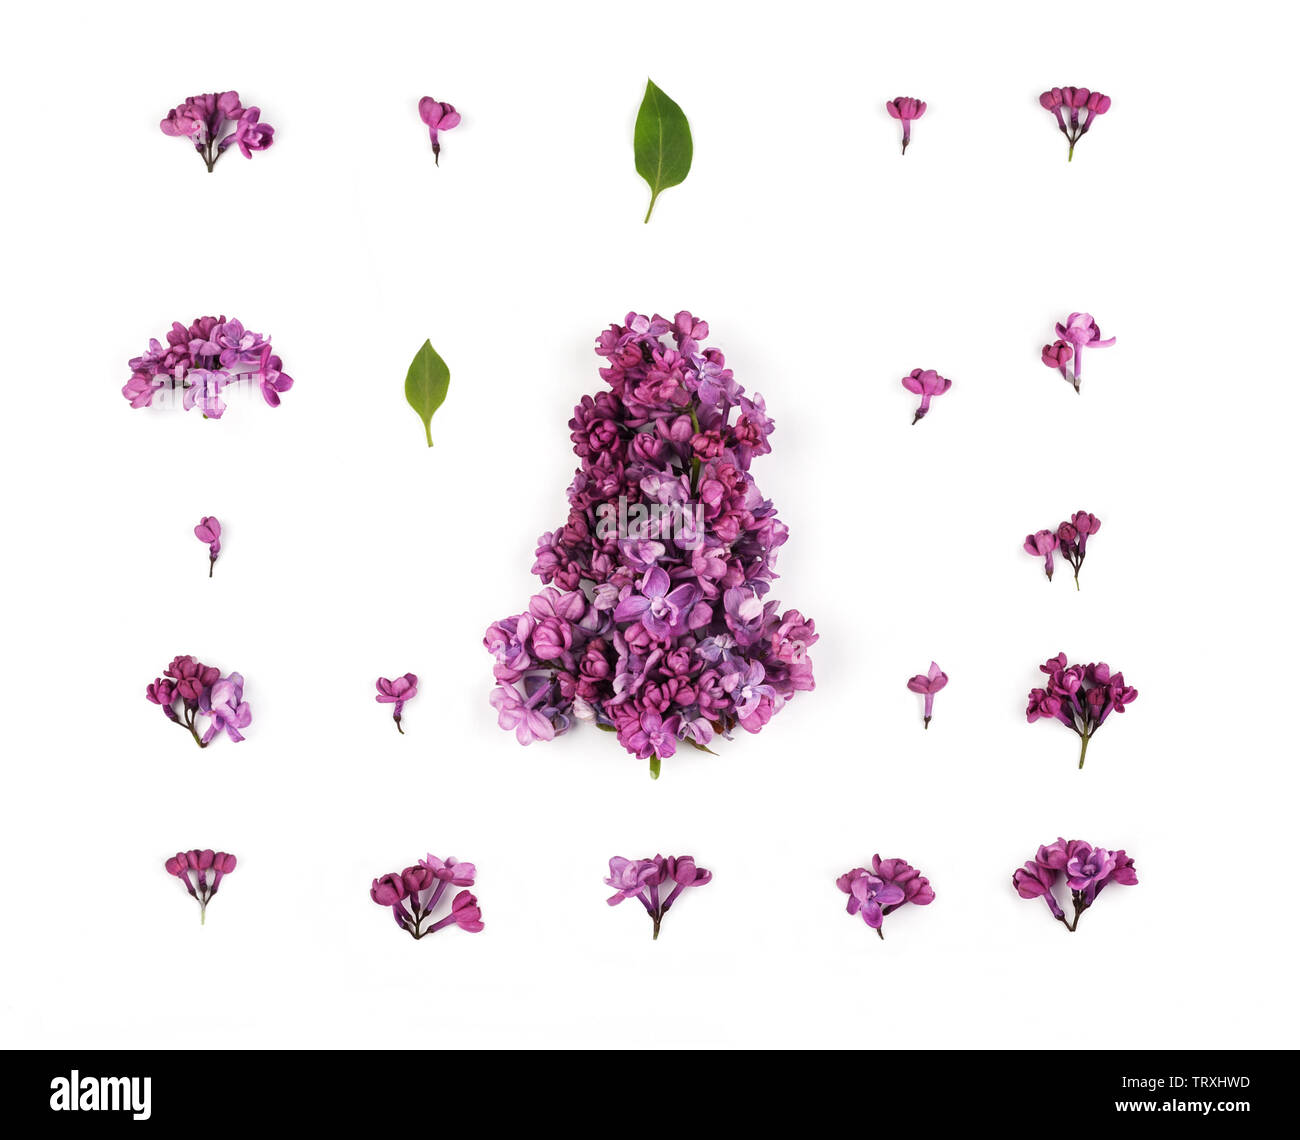 Mise en page créative faite de fleurs lilas pourpre et les pétales sur le fond blanc. Motif floral dans un style minimaliste. Mise à plat,vue d'en haut. Banque D'Images